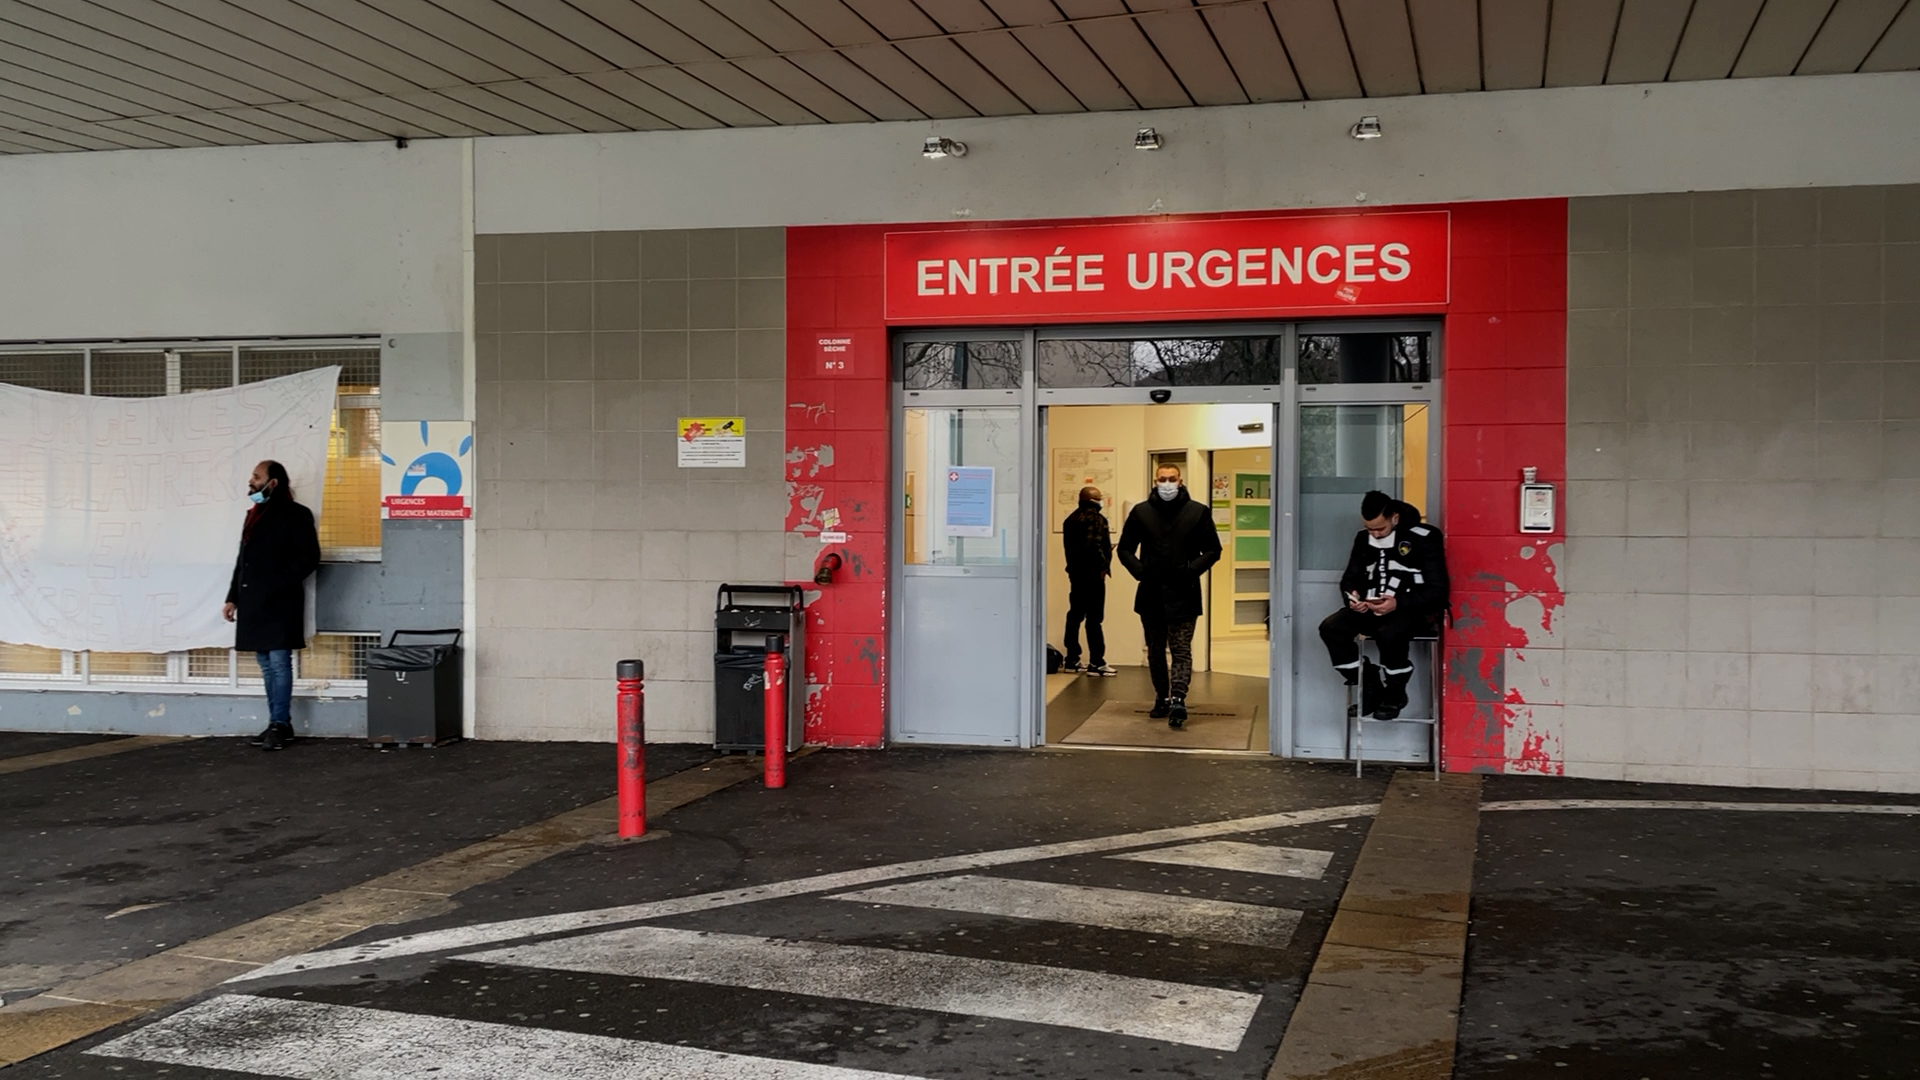 Le service des urgences pédiatriques de l’hôpital de Saint-Denis était fermé lundi, faute d’infirmières. Depuis, la majorité des petits patients sont réorientés vers d’autres hôpitaux ou centres de santé.